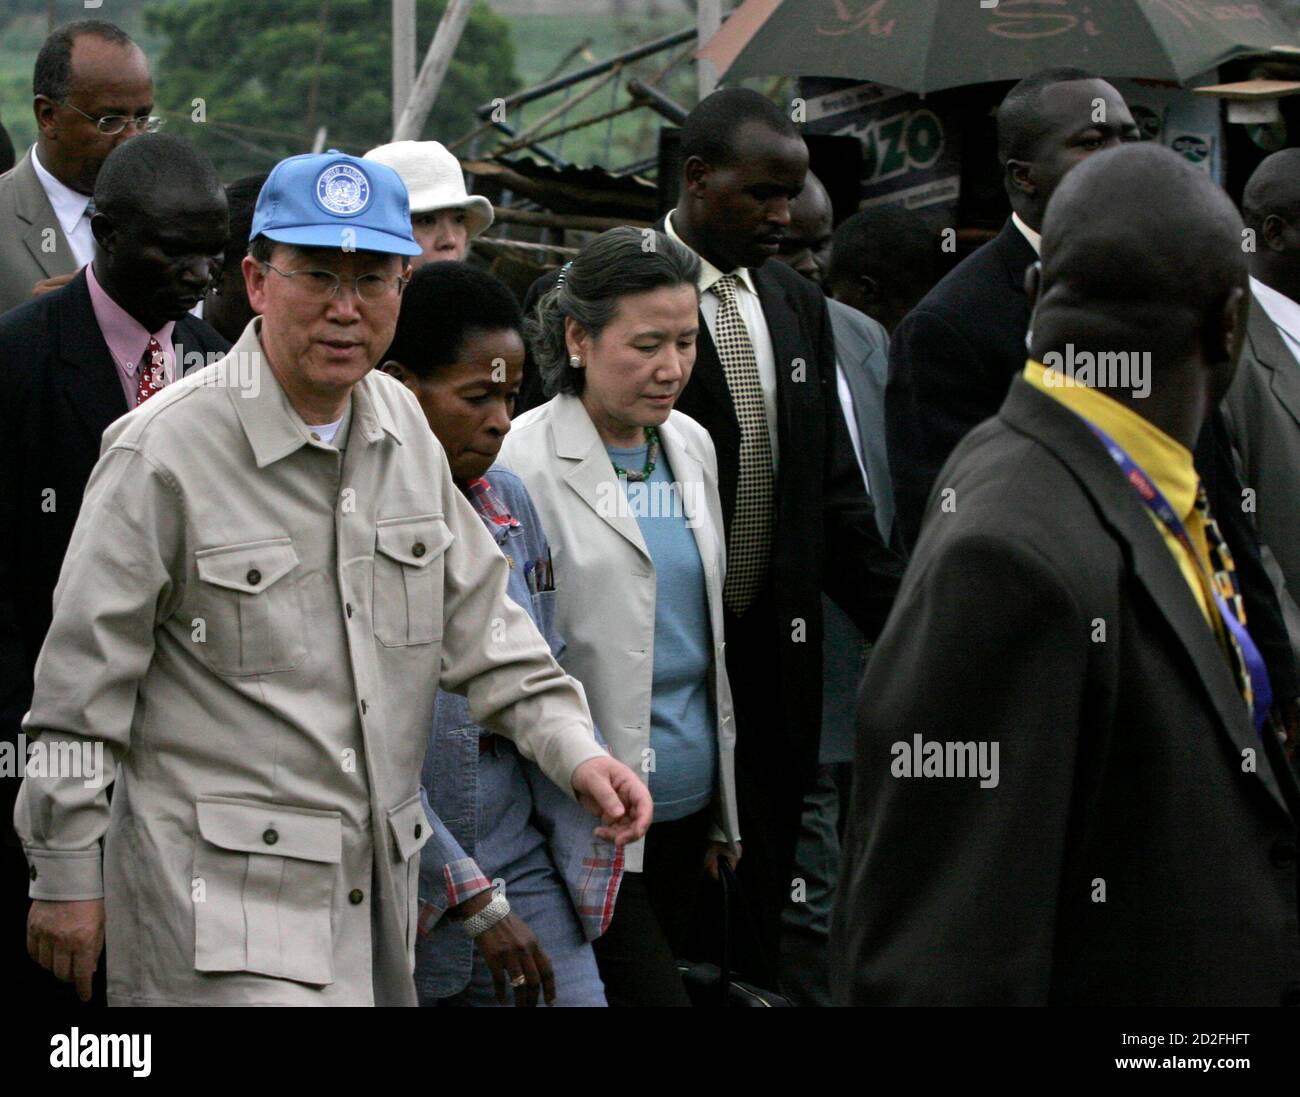 Le nouveau Secrétaire général de l'ONU, Ban Ki-Moon (L), la Directrice exécutive du Programme des établissements humains de l'ONU, Anna Tibaijuka (2e L) et l'épouse de Ban Yoo Soon-taek (3e L) marchent lors d'une visite à Kibera Slum, qui compte plus de 800,000 personnes, dans la capitale du Kenya, Nairobi, le 30 janvier 2007. REUTERS/Thomas Mukoya (KENYA) Banque D'Images